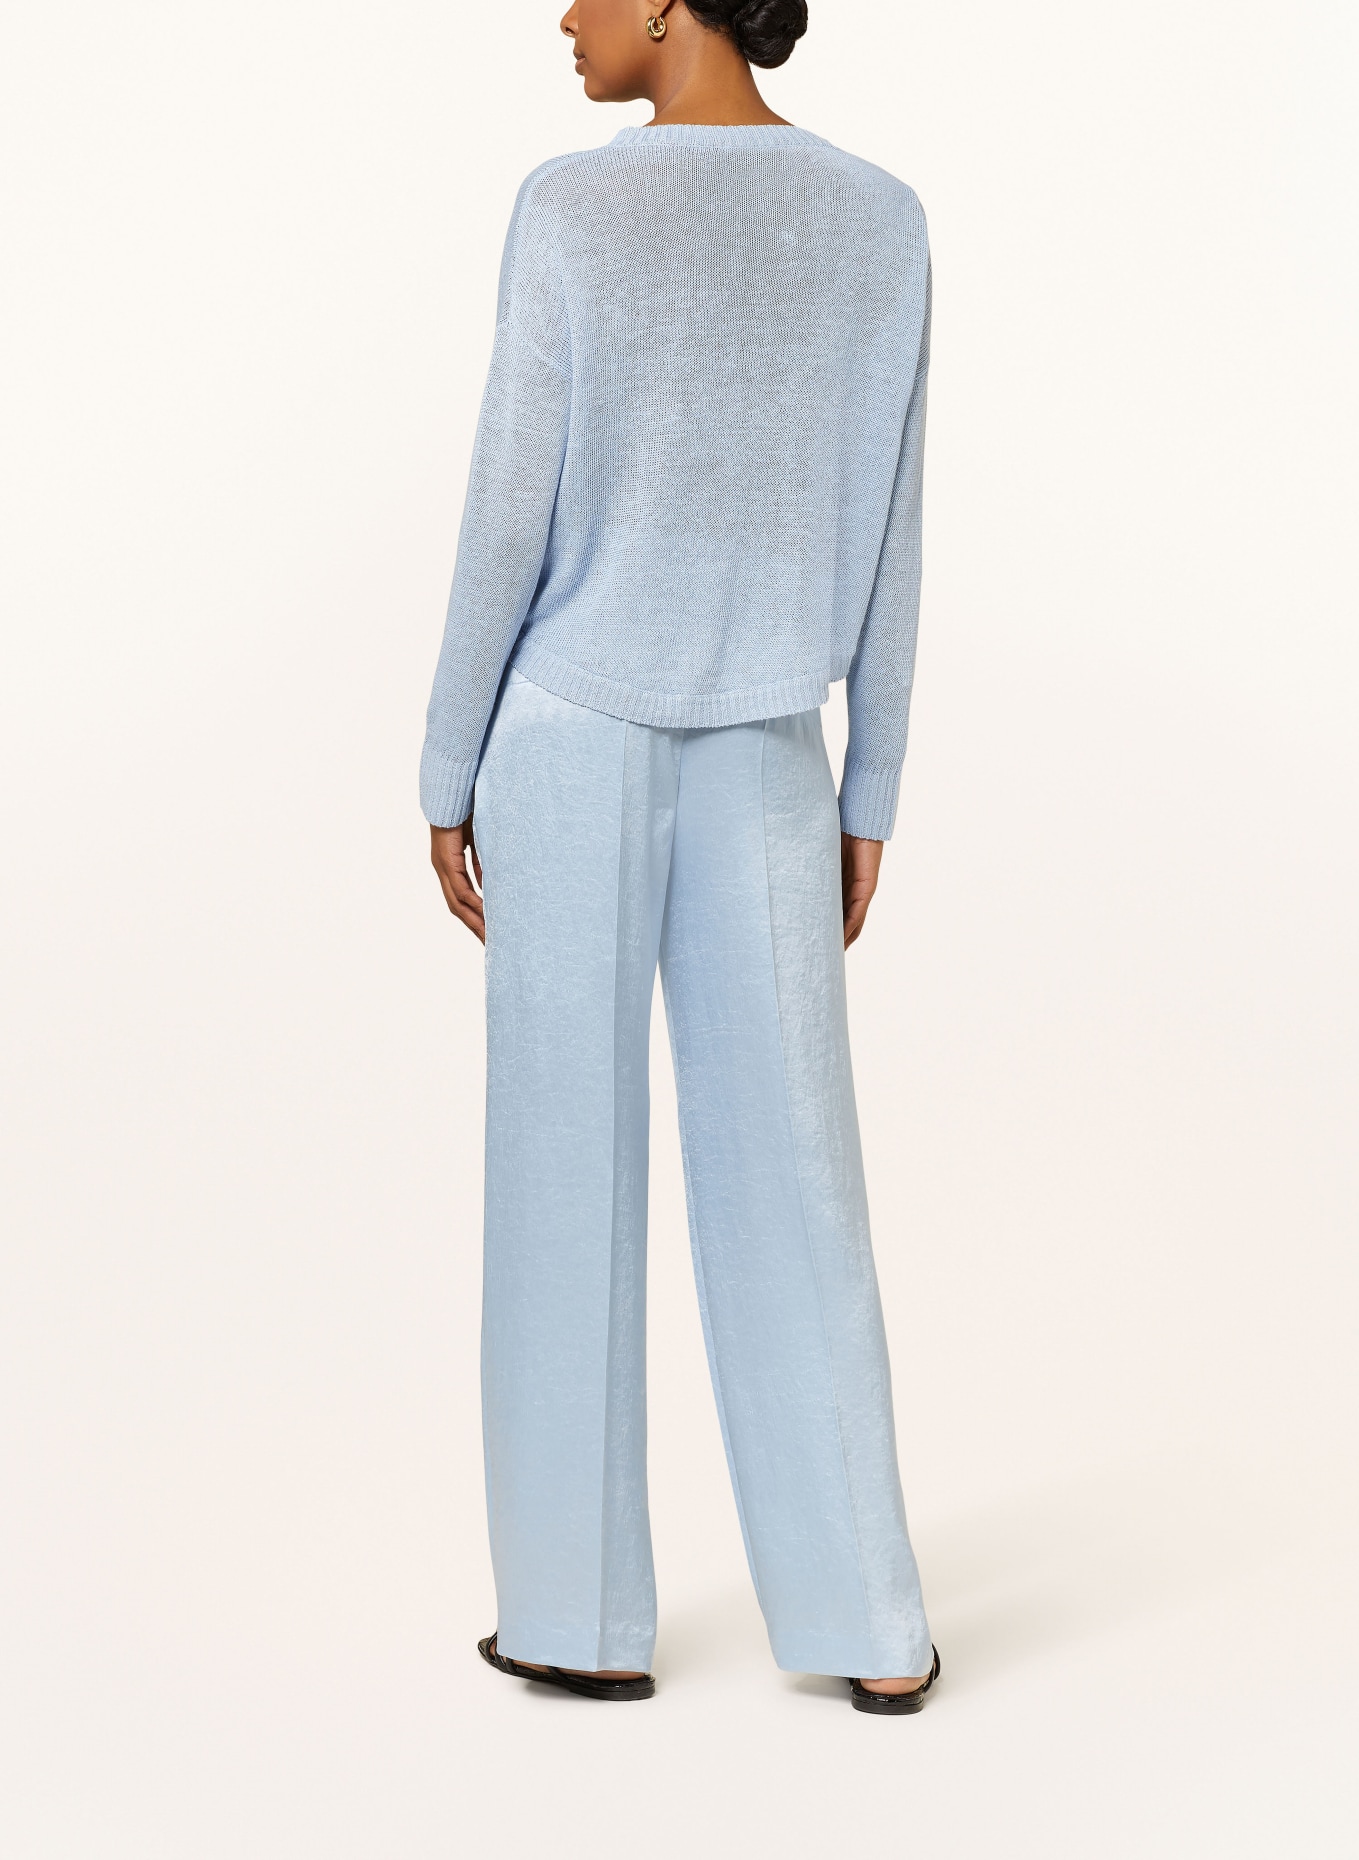 HEMISPHERE Linen sweater, Color: LIGHT BLUE (Image 3)